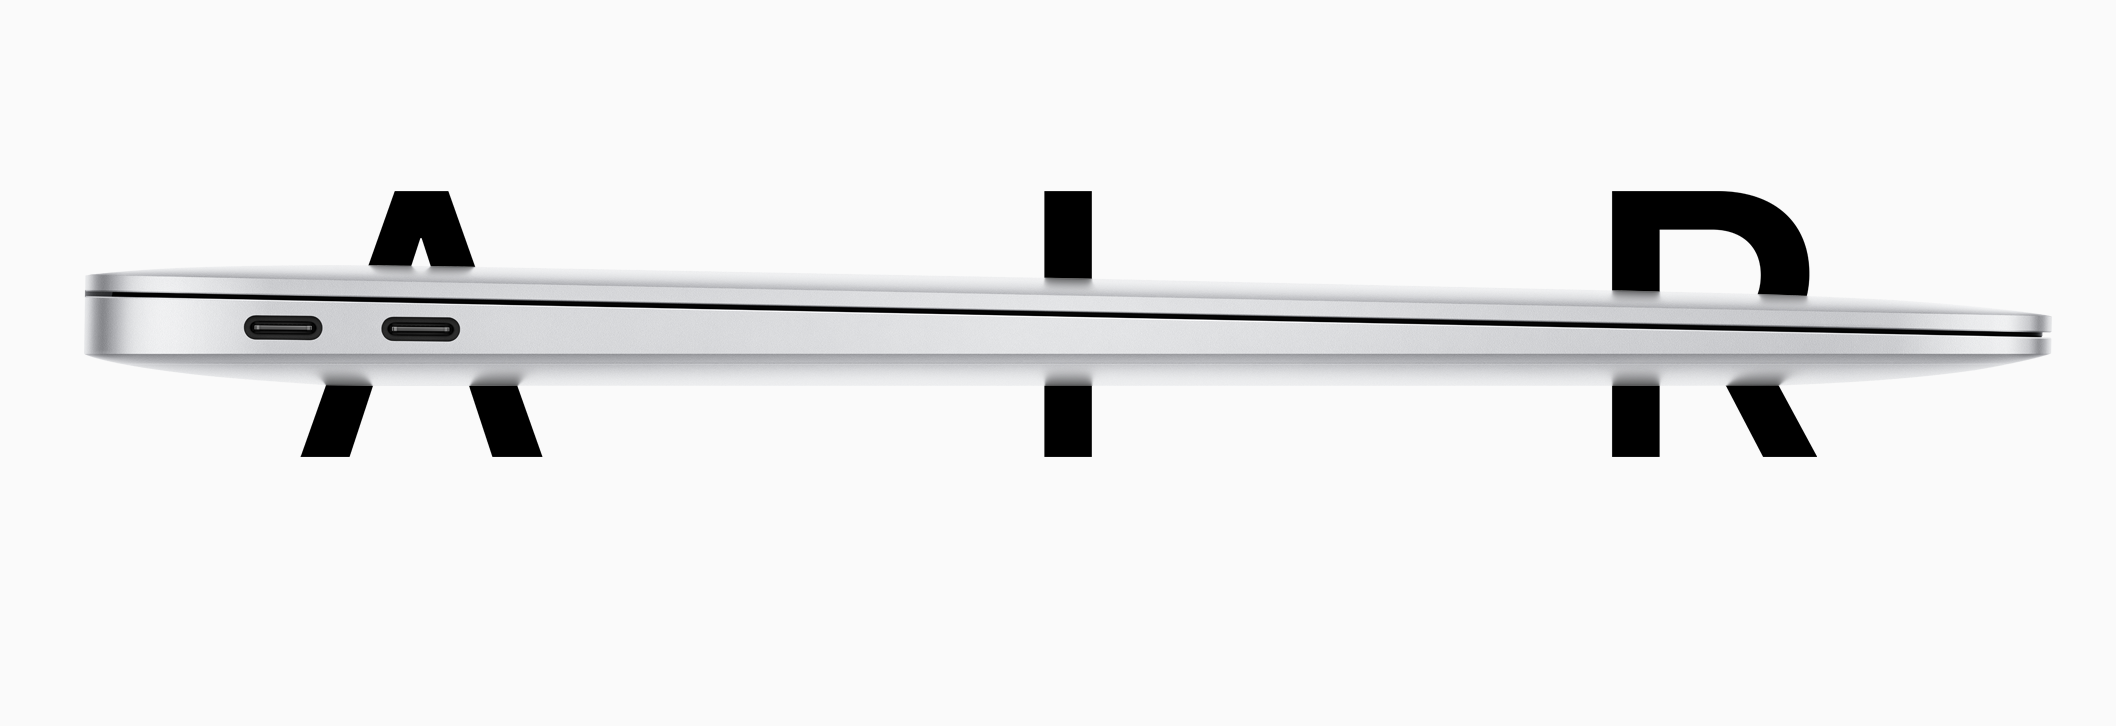 Apple je tiho napovedal nov MacBook Air: boljši procesor, grafika, cena in tipkovnica!